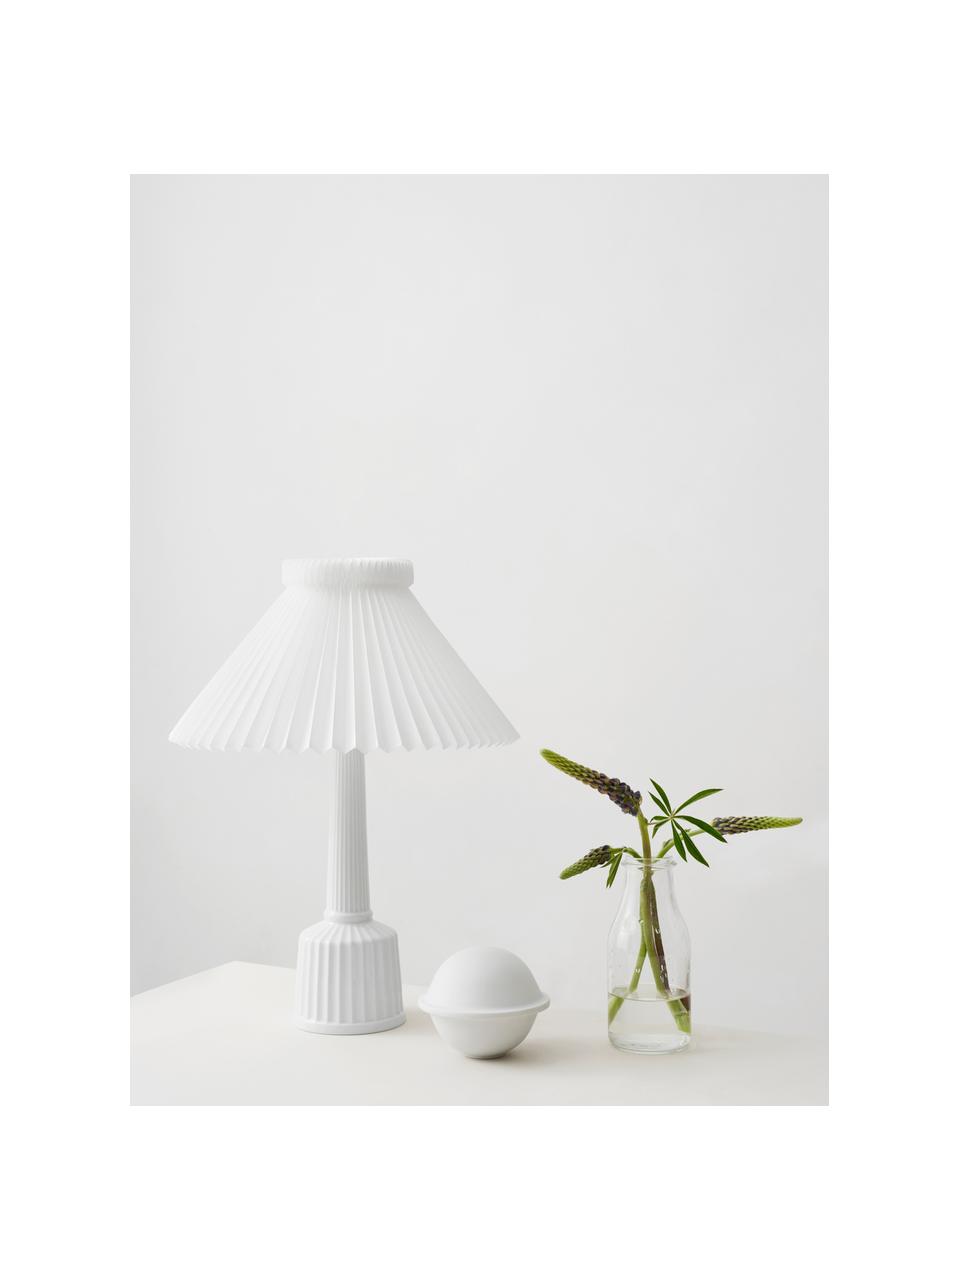 Porzellan-Tischlampe Esben, handgefertigt, Weiß, Ø 32 x H 44 cm